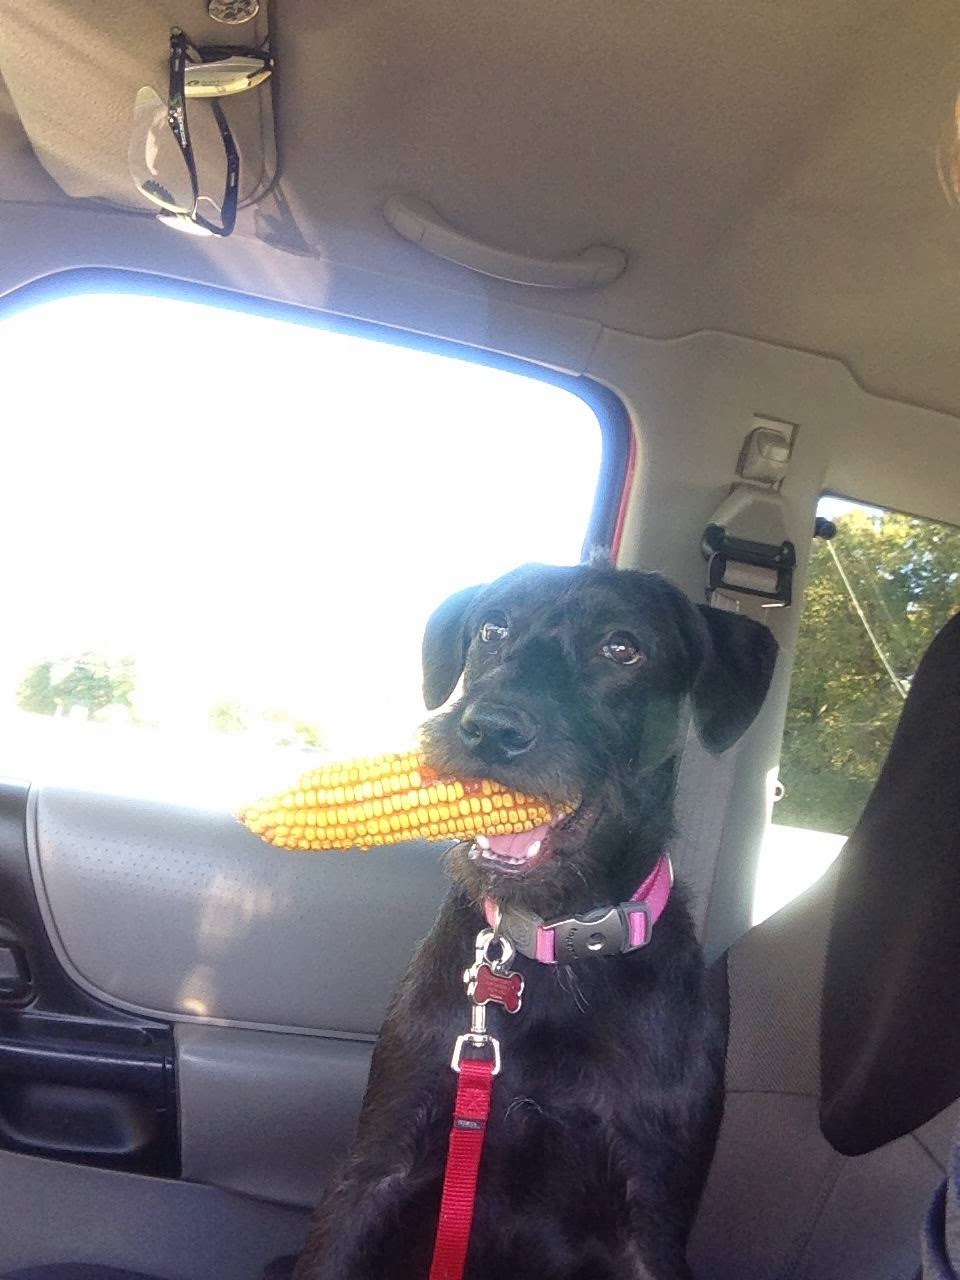 Cute dogs - part 8 (50 pics), dog chews a corn cob